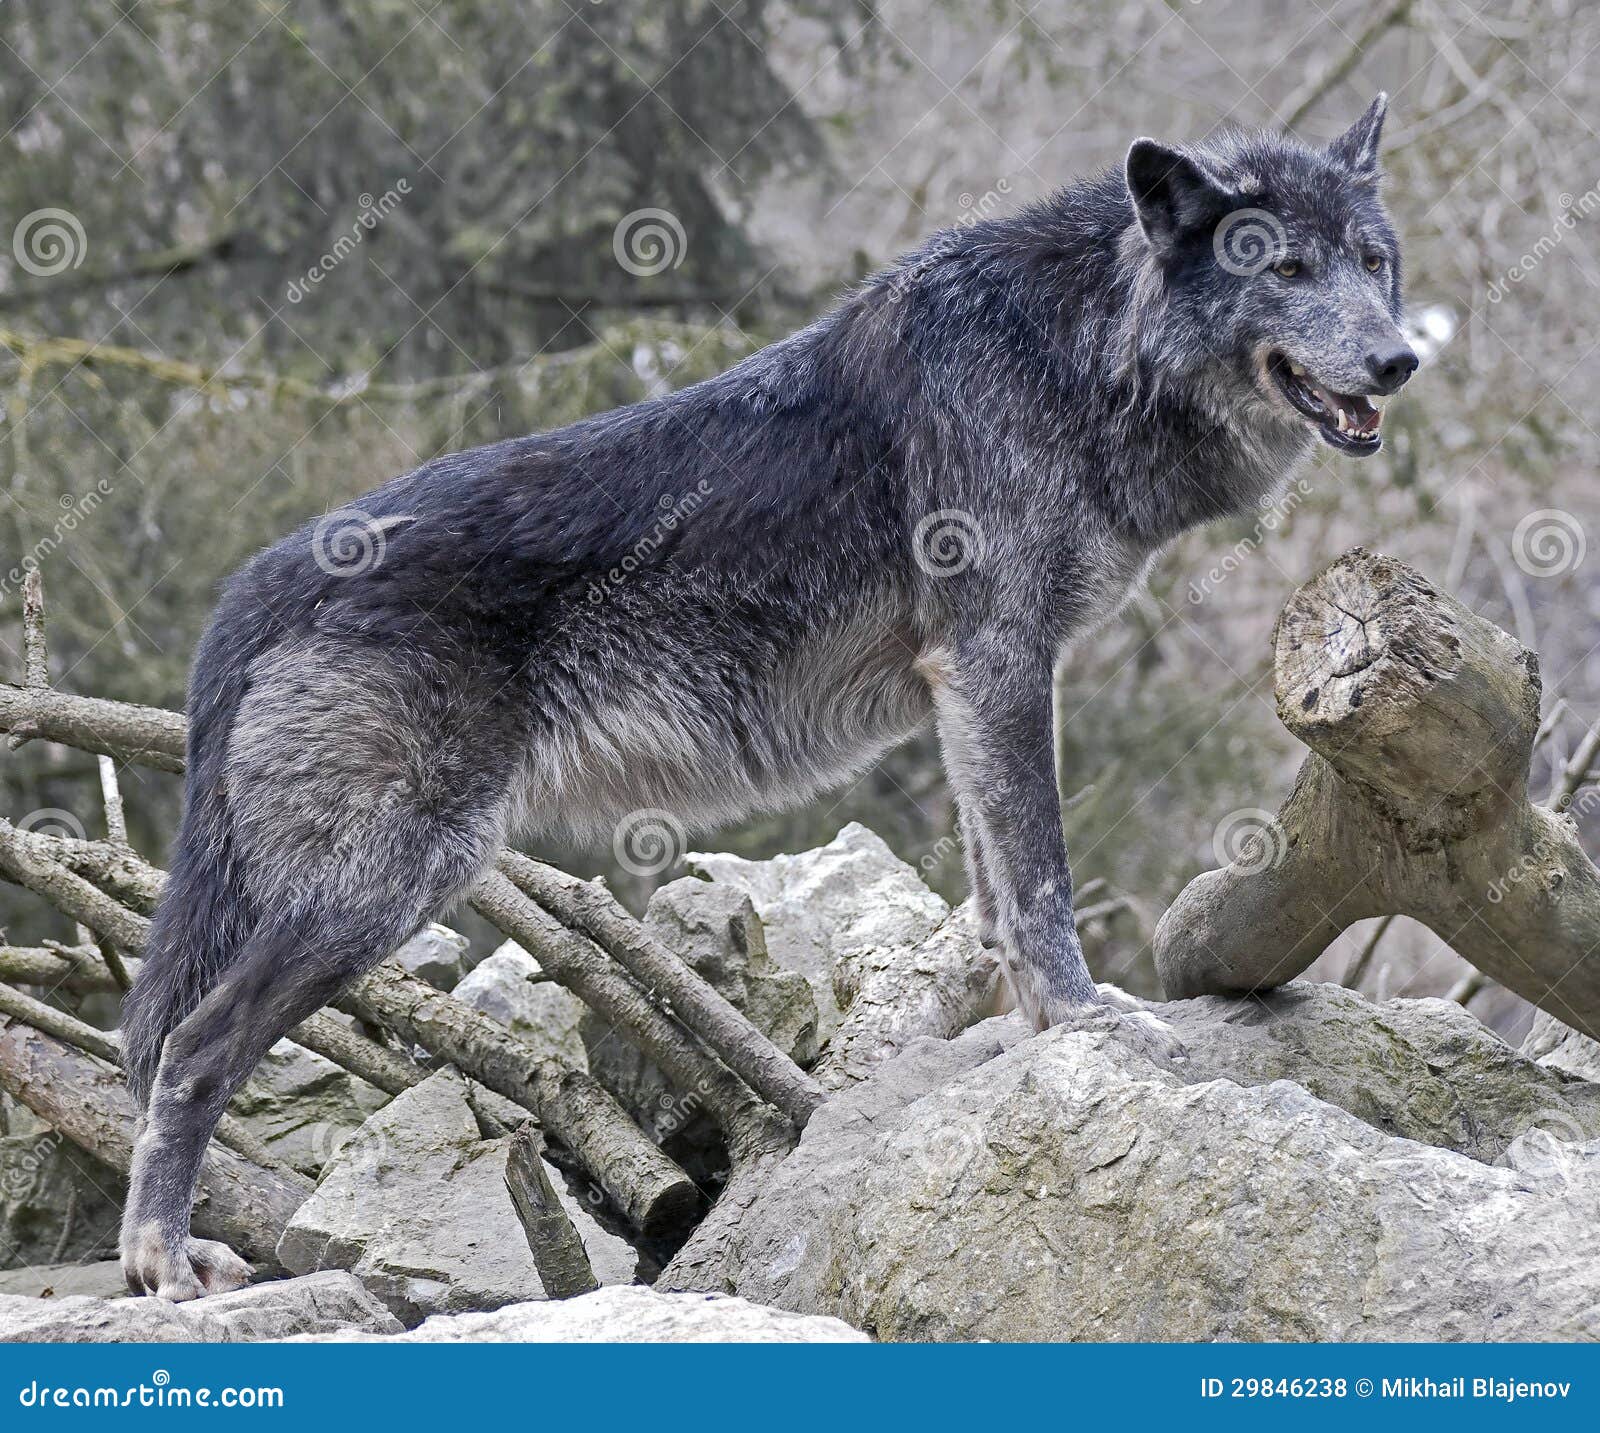 黑狼的特写 库存照片. 图片 包括有 猎人, 哺乳动物, 敌意, 危险, 狼疮, 本质, 似犬, 食肉动物 - 236458442